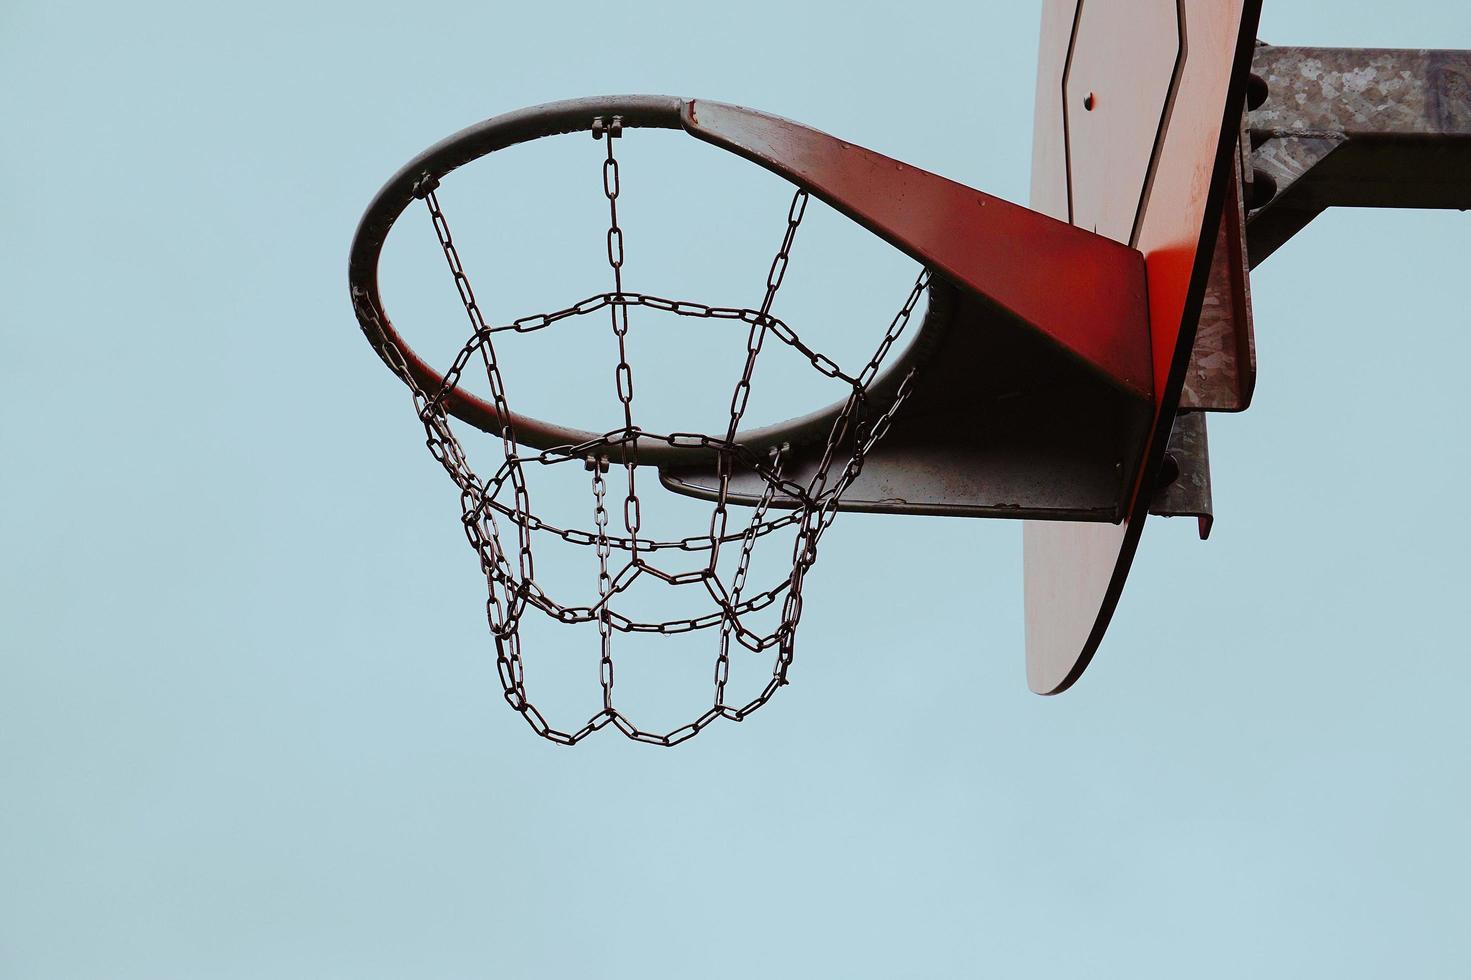 cesta de basquete de rua em bilbao city, espanha foto